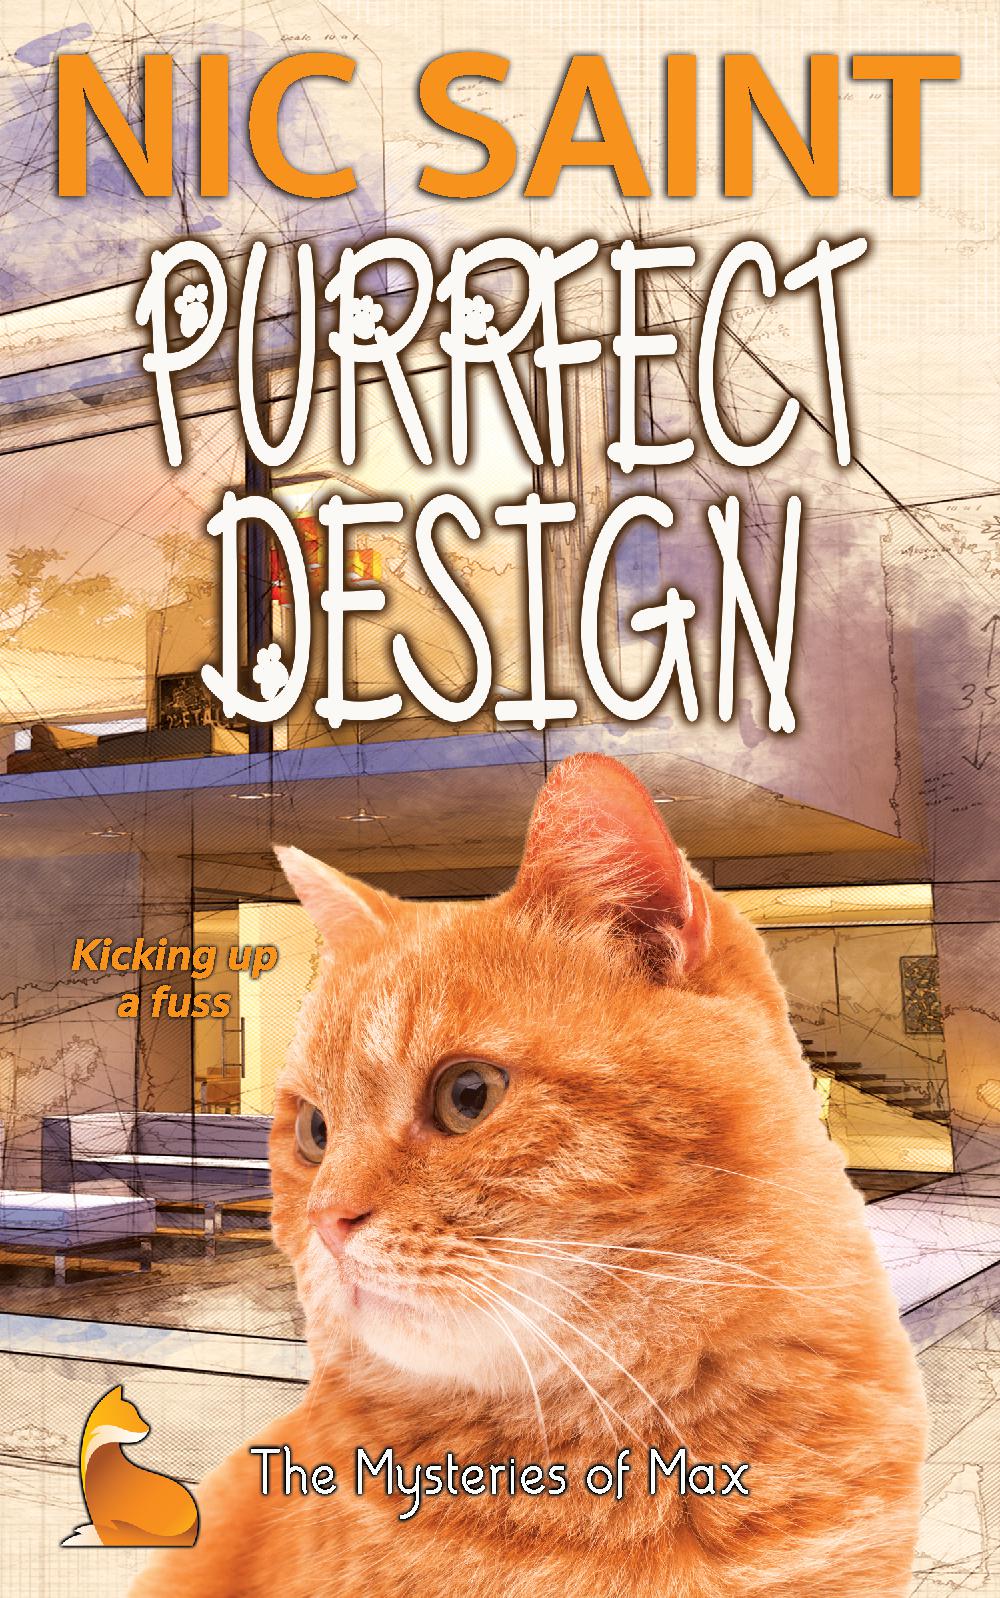 Purrfect Design (Paperback)